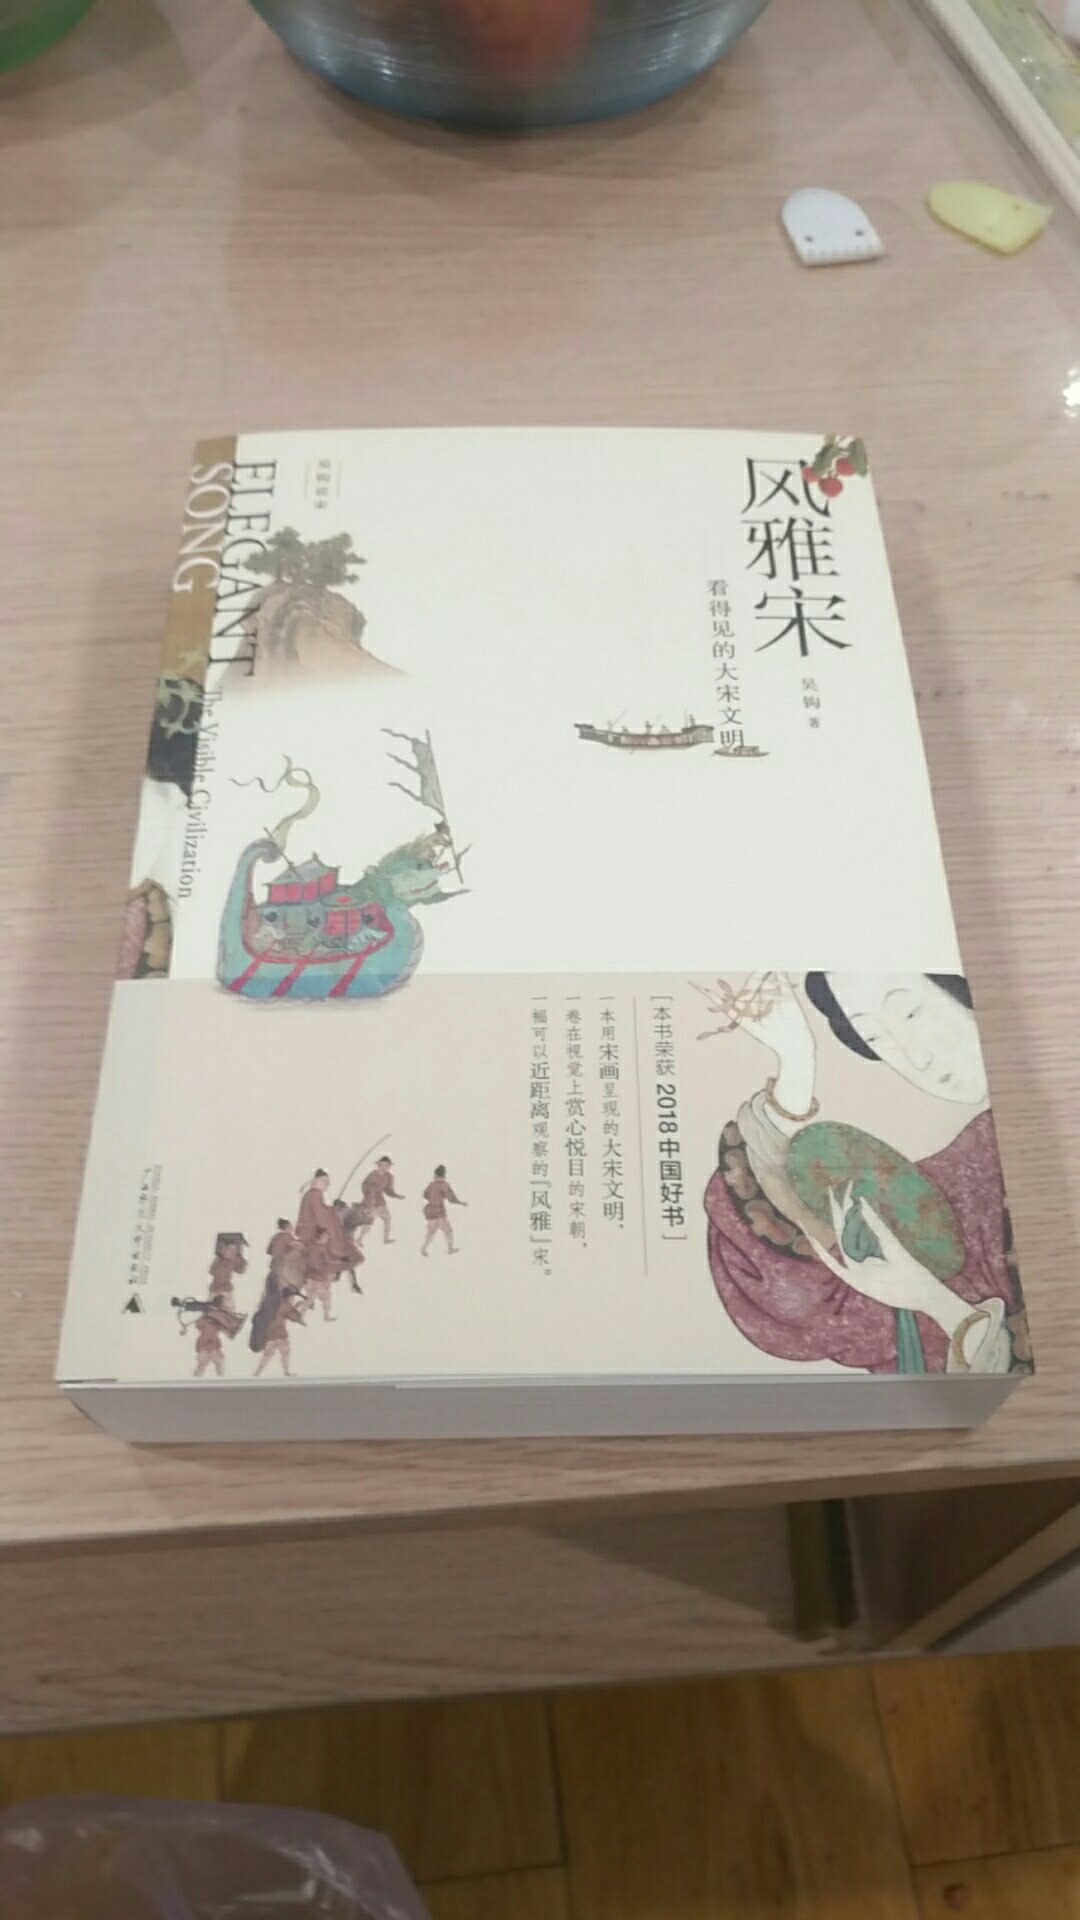 一直听人高度评价宋朝的艺术，所以很感兴趣，第一次买关于宋朝的书，应该还不错。